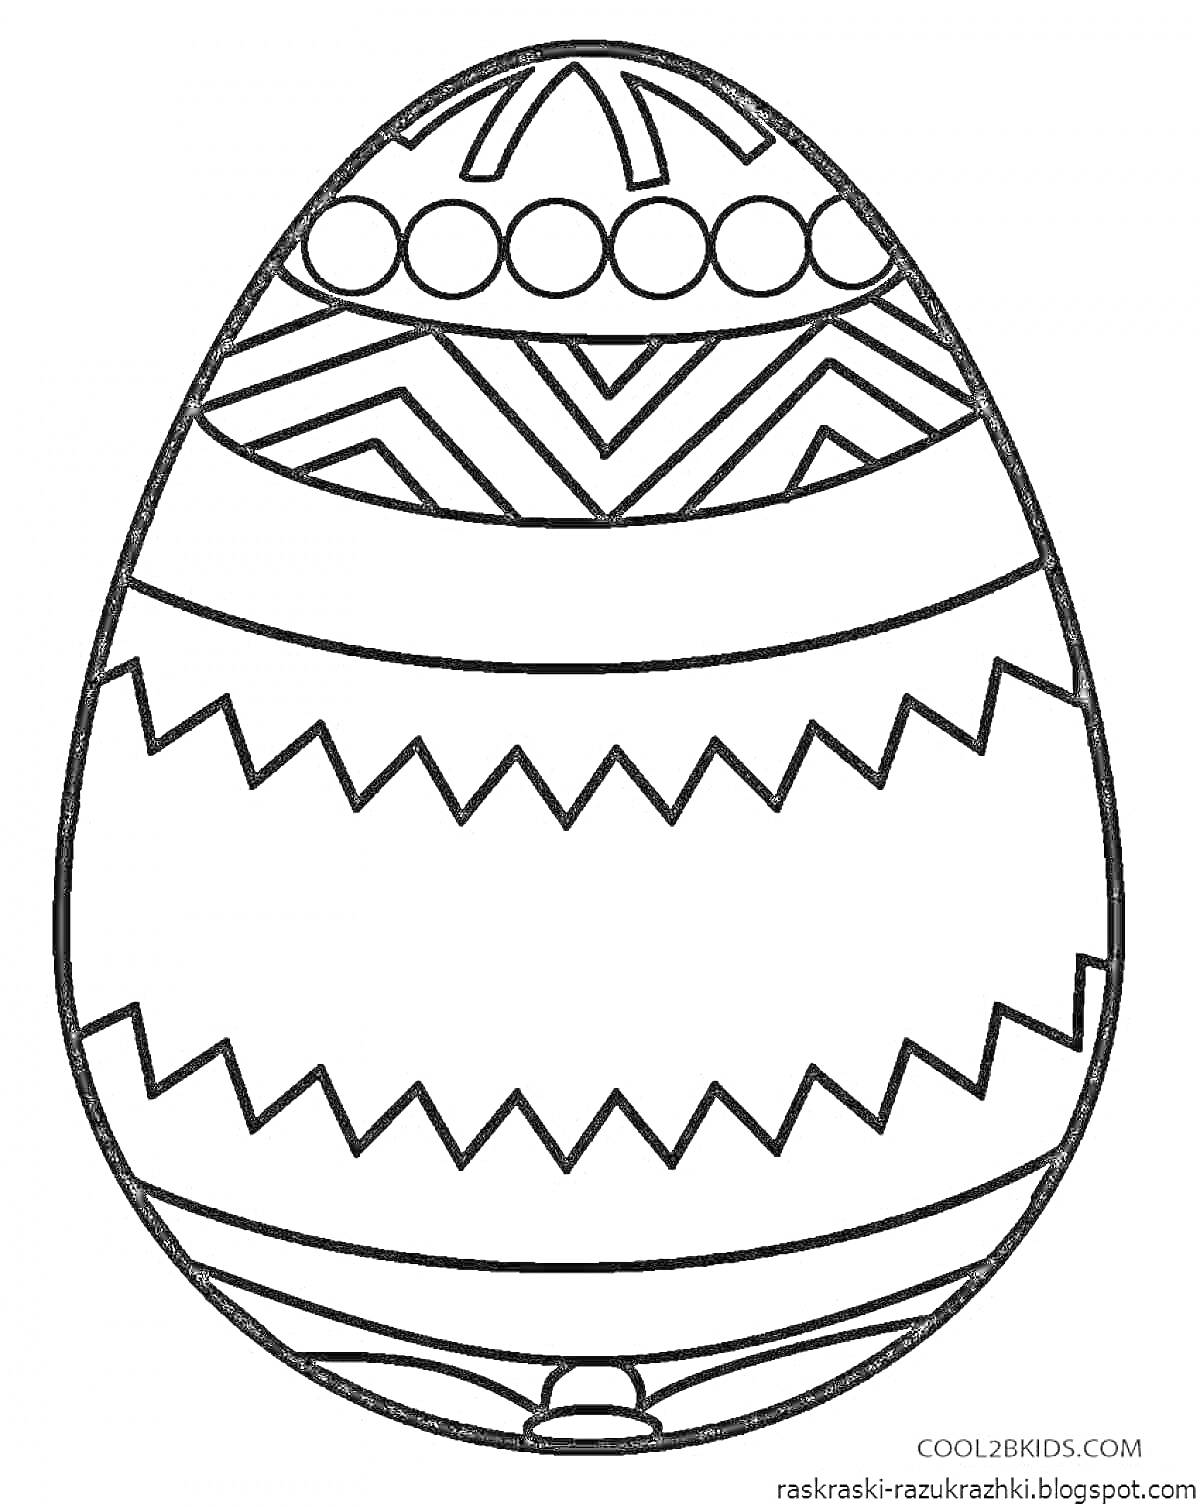 РаскраскаПраздничное яйцо с различными узорами: круги, зигзаги, линии и треугольники